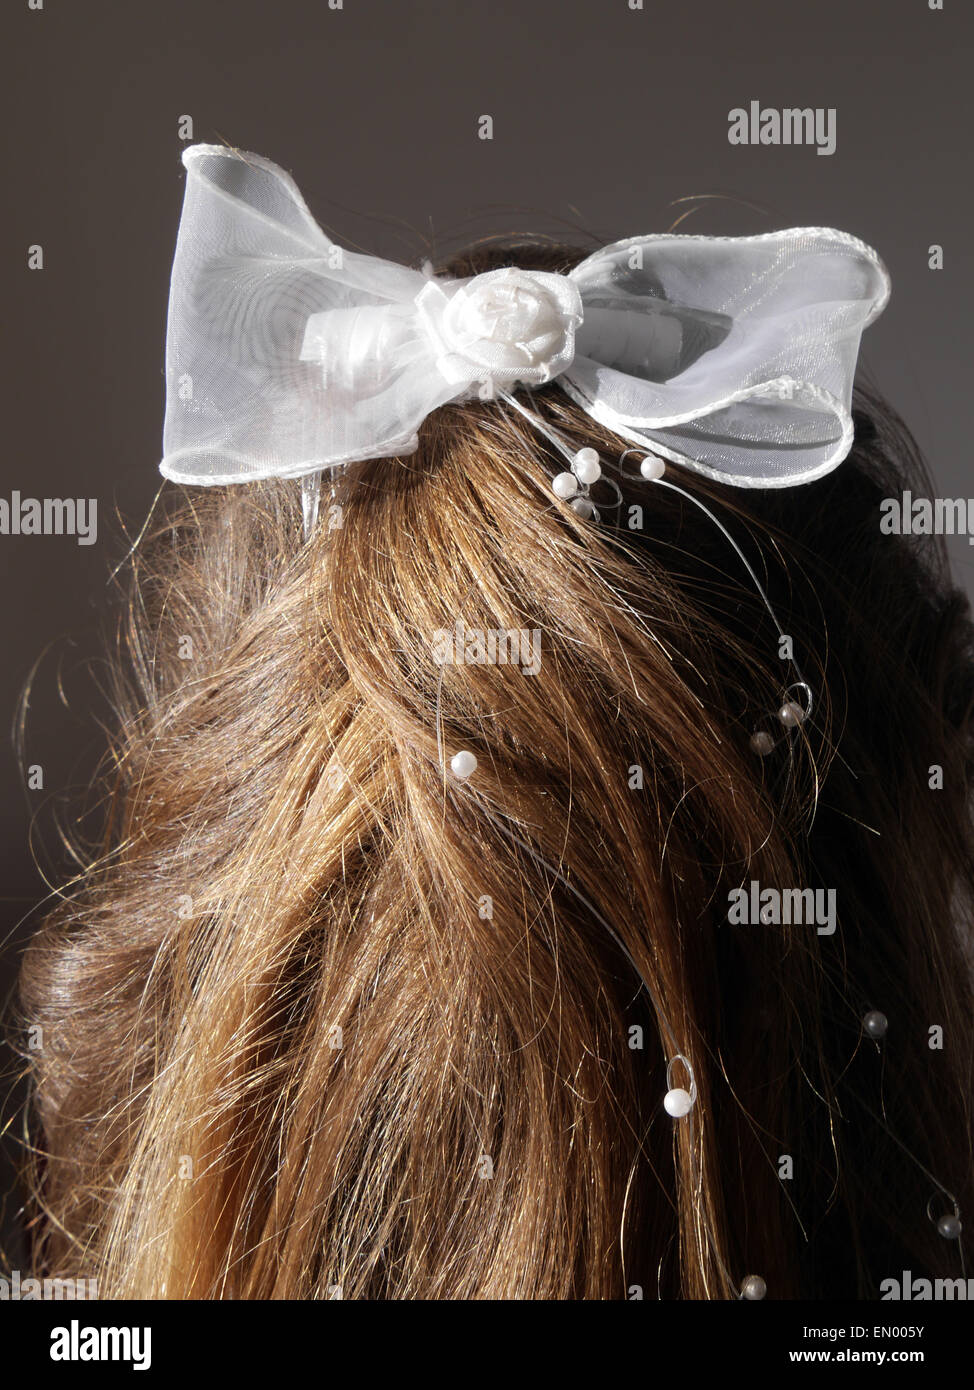 white hair bow Stock Photo